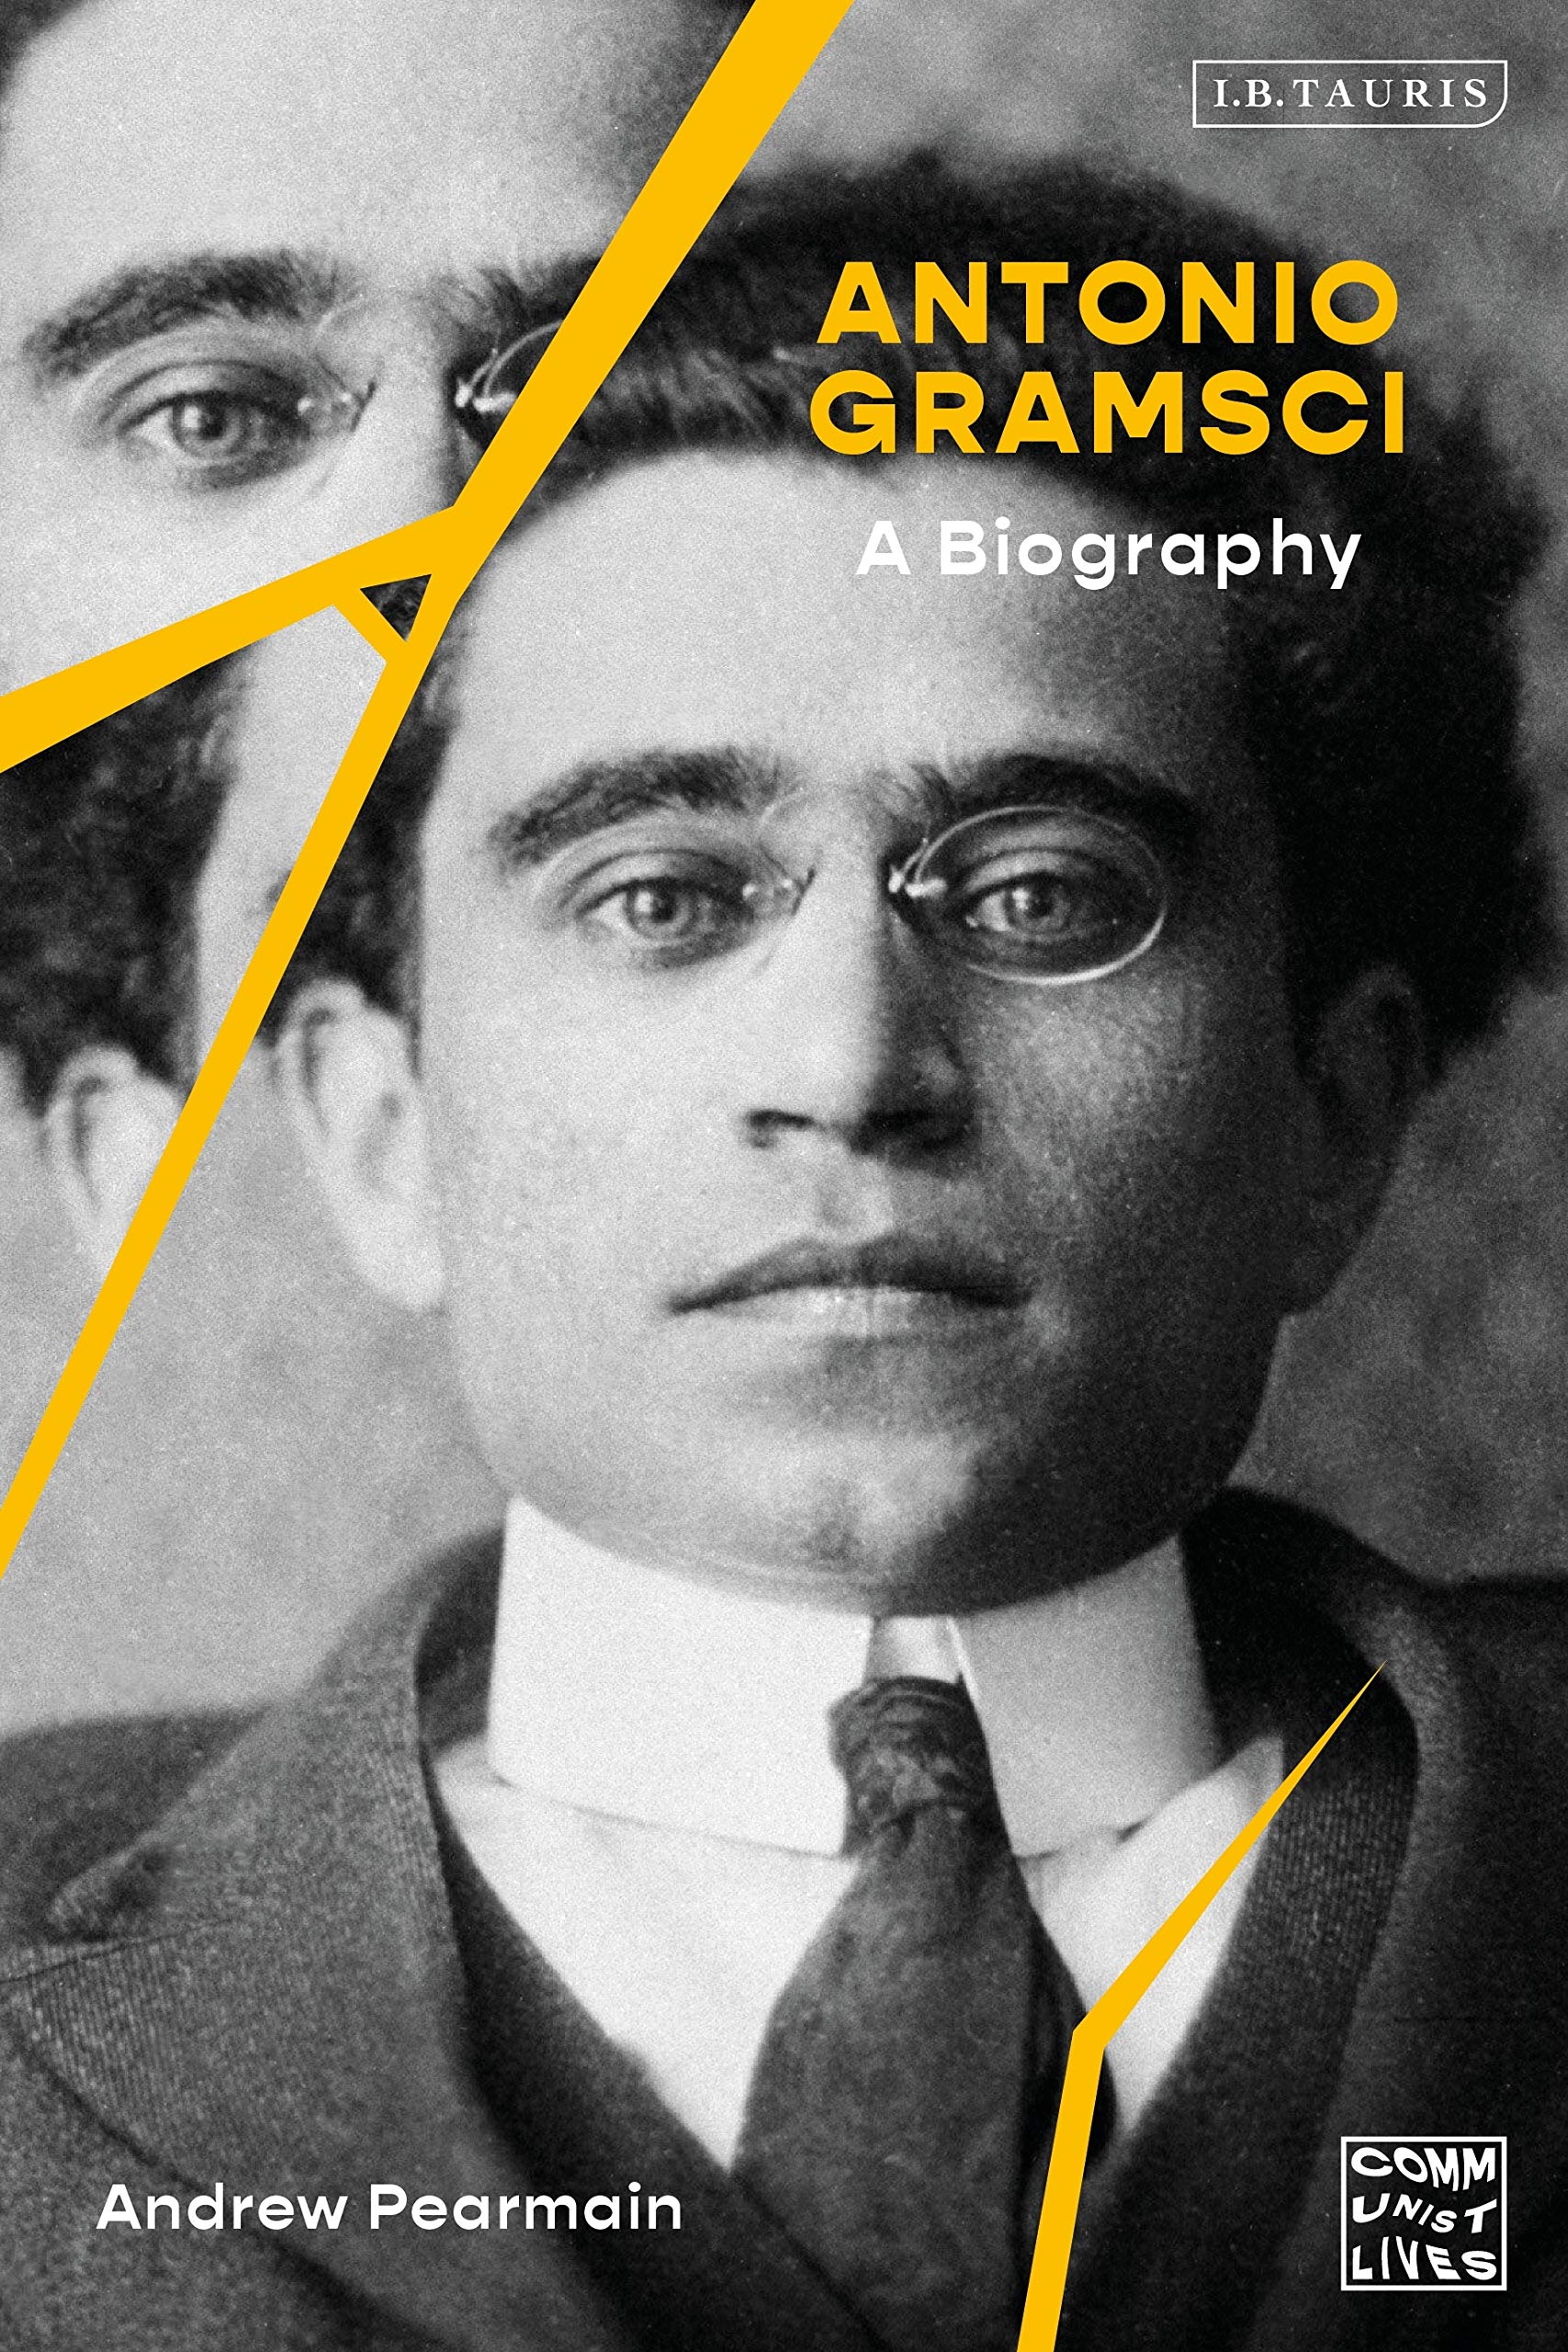 Antonio Gramsci: A Biography